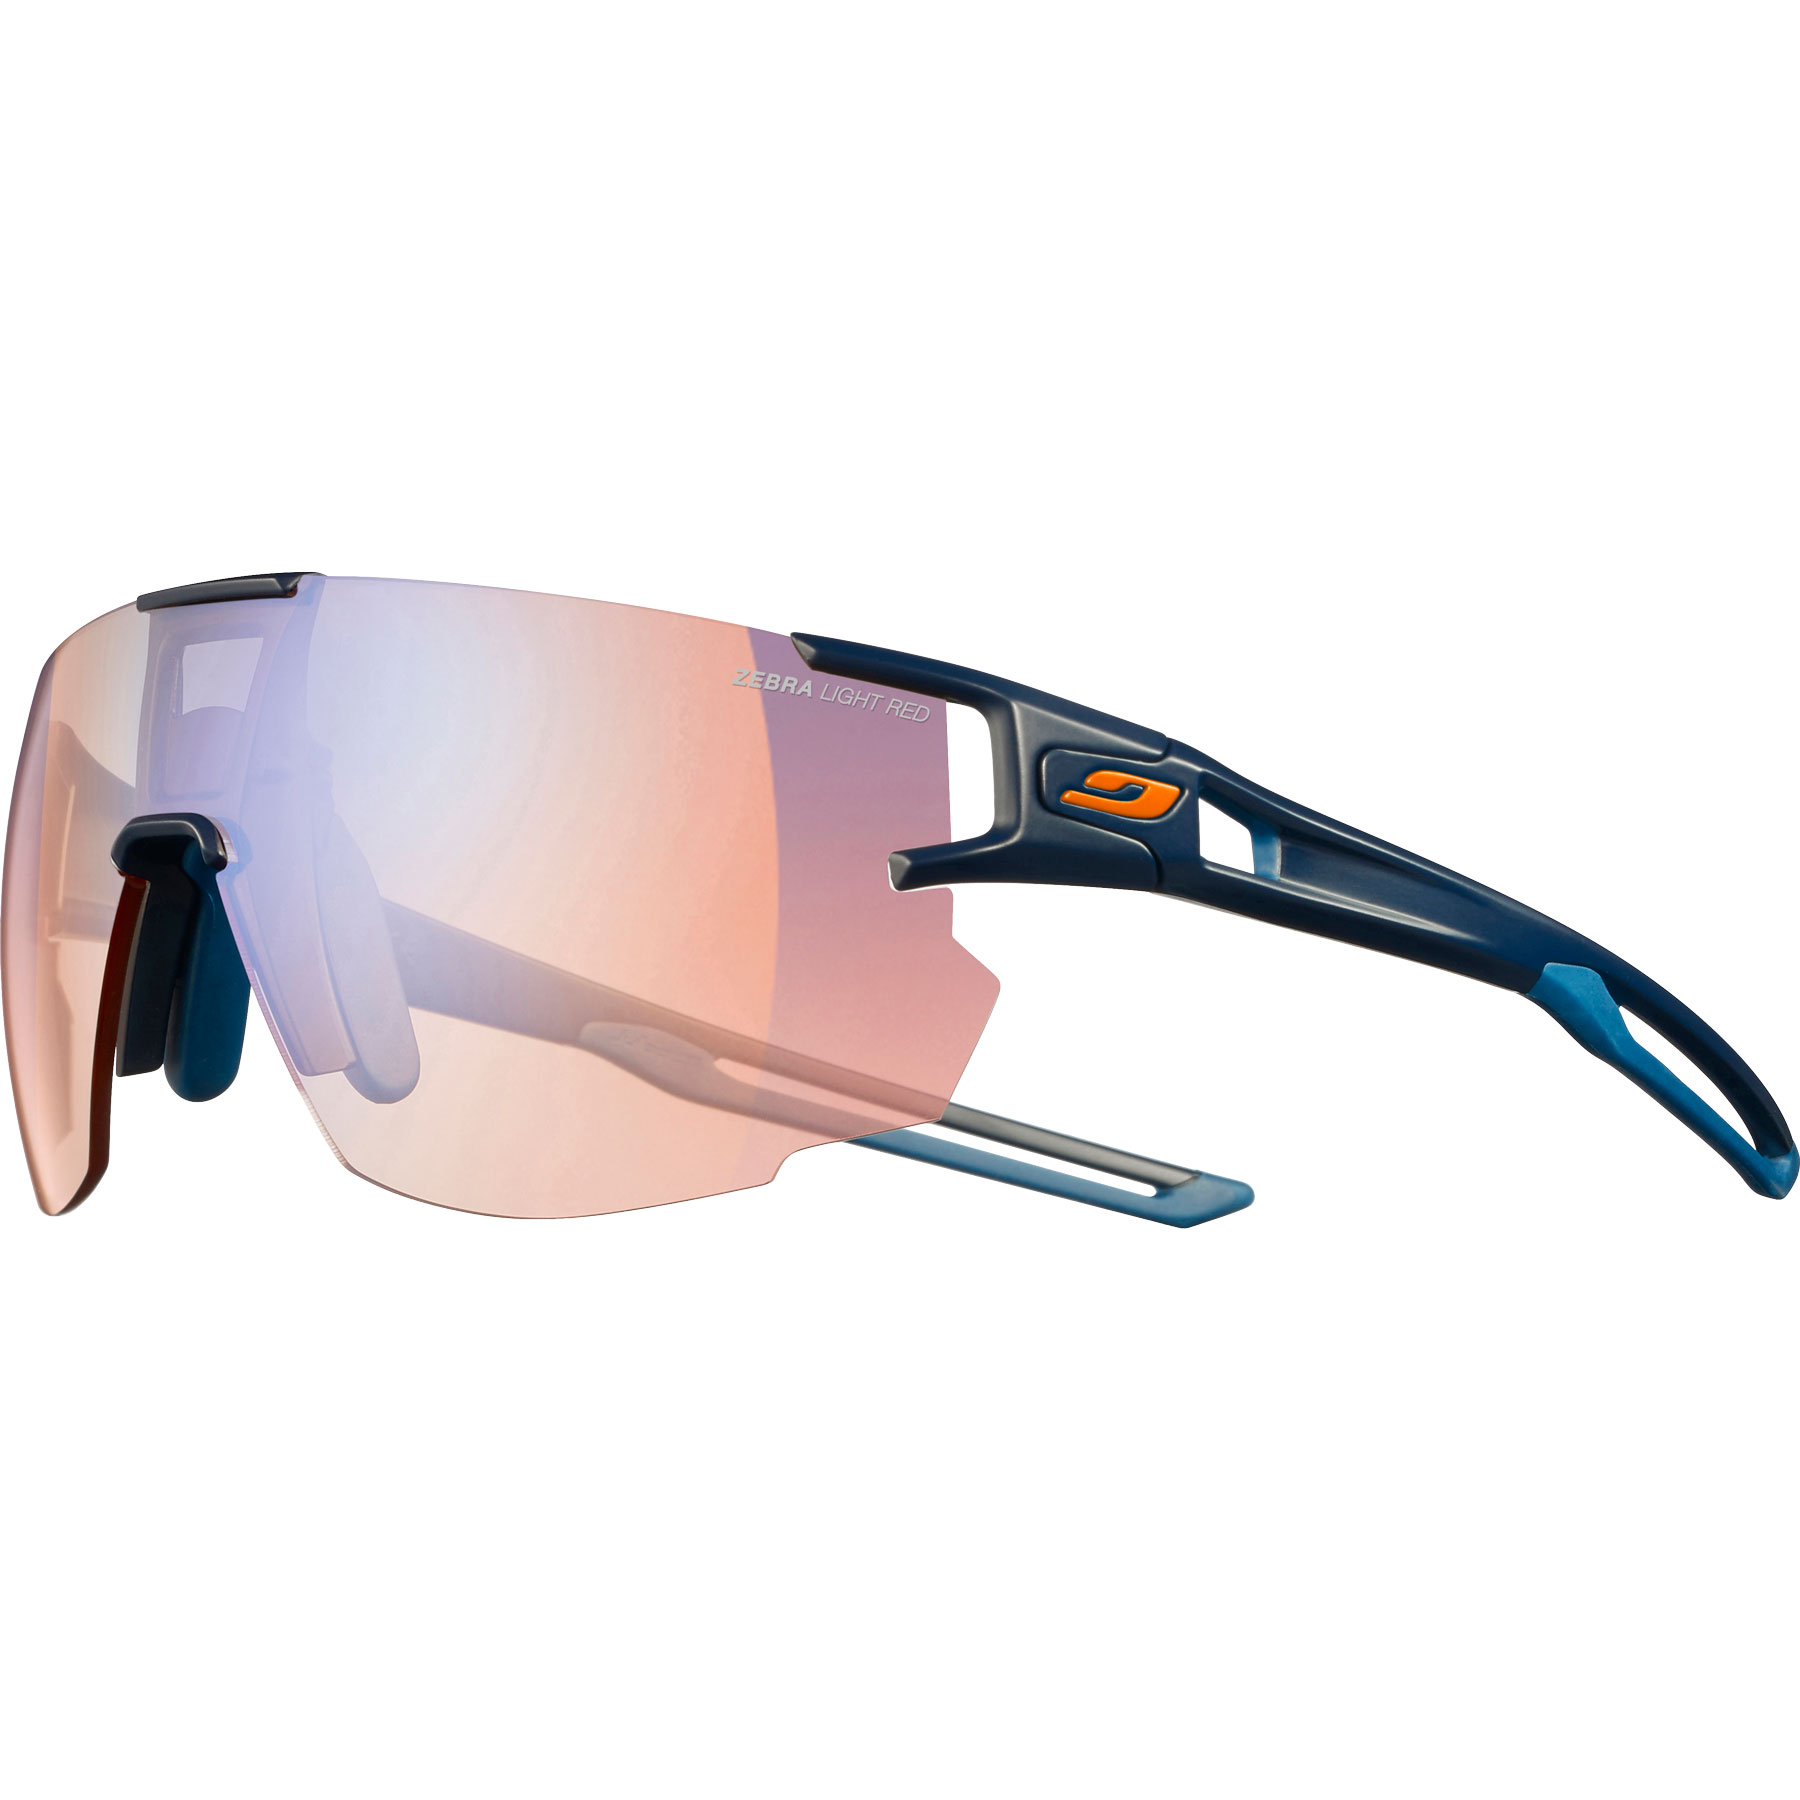 Produktbild von Julbo Aerospeed Reactiv Performance 1-3 Sonnenbrille - Dunkelblau Orange / Multilayer Blau